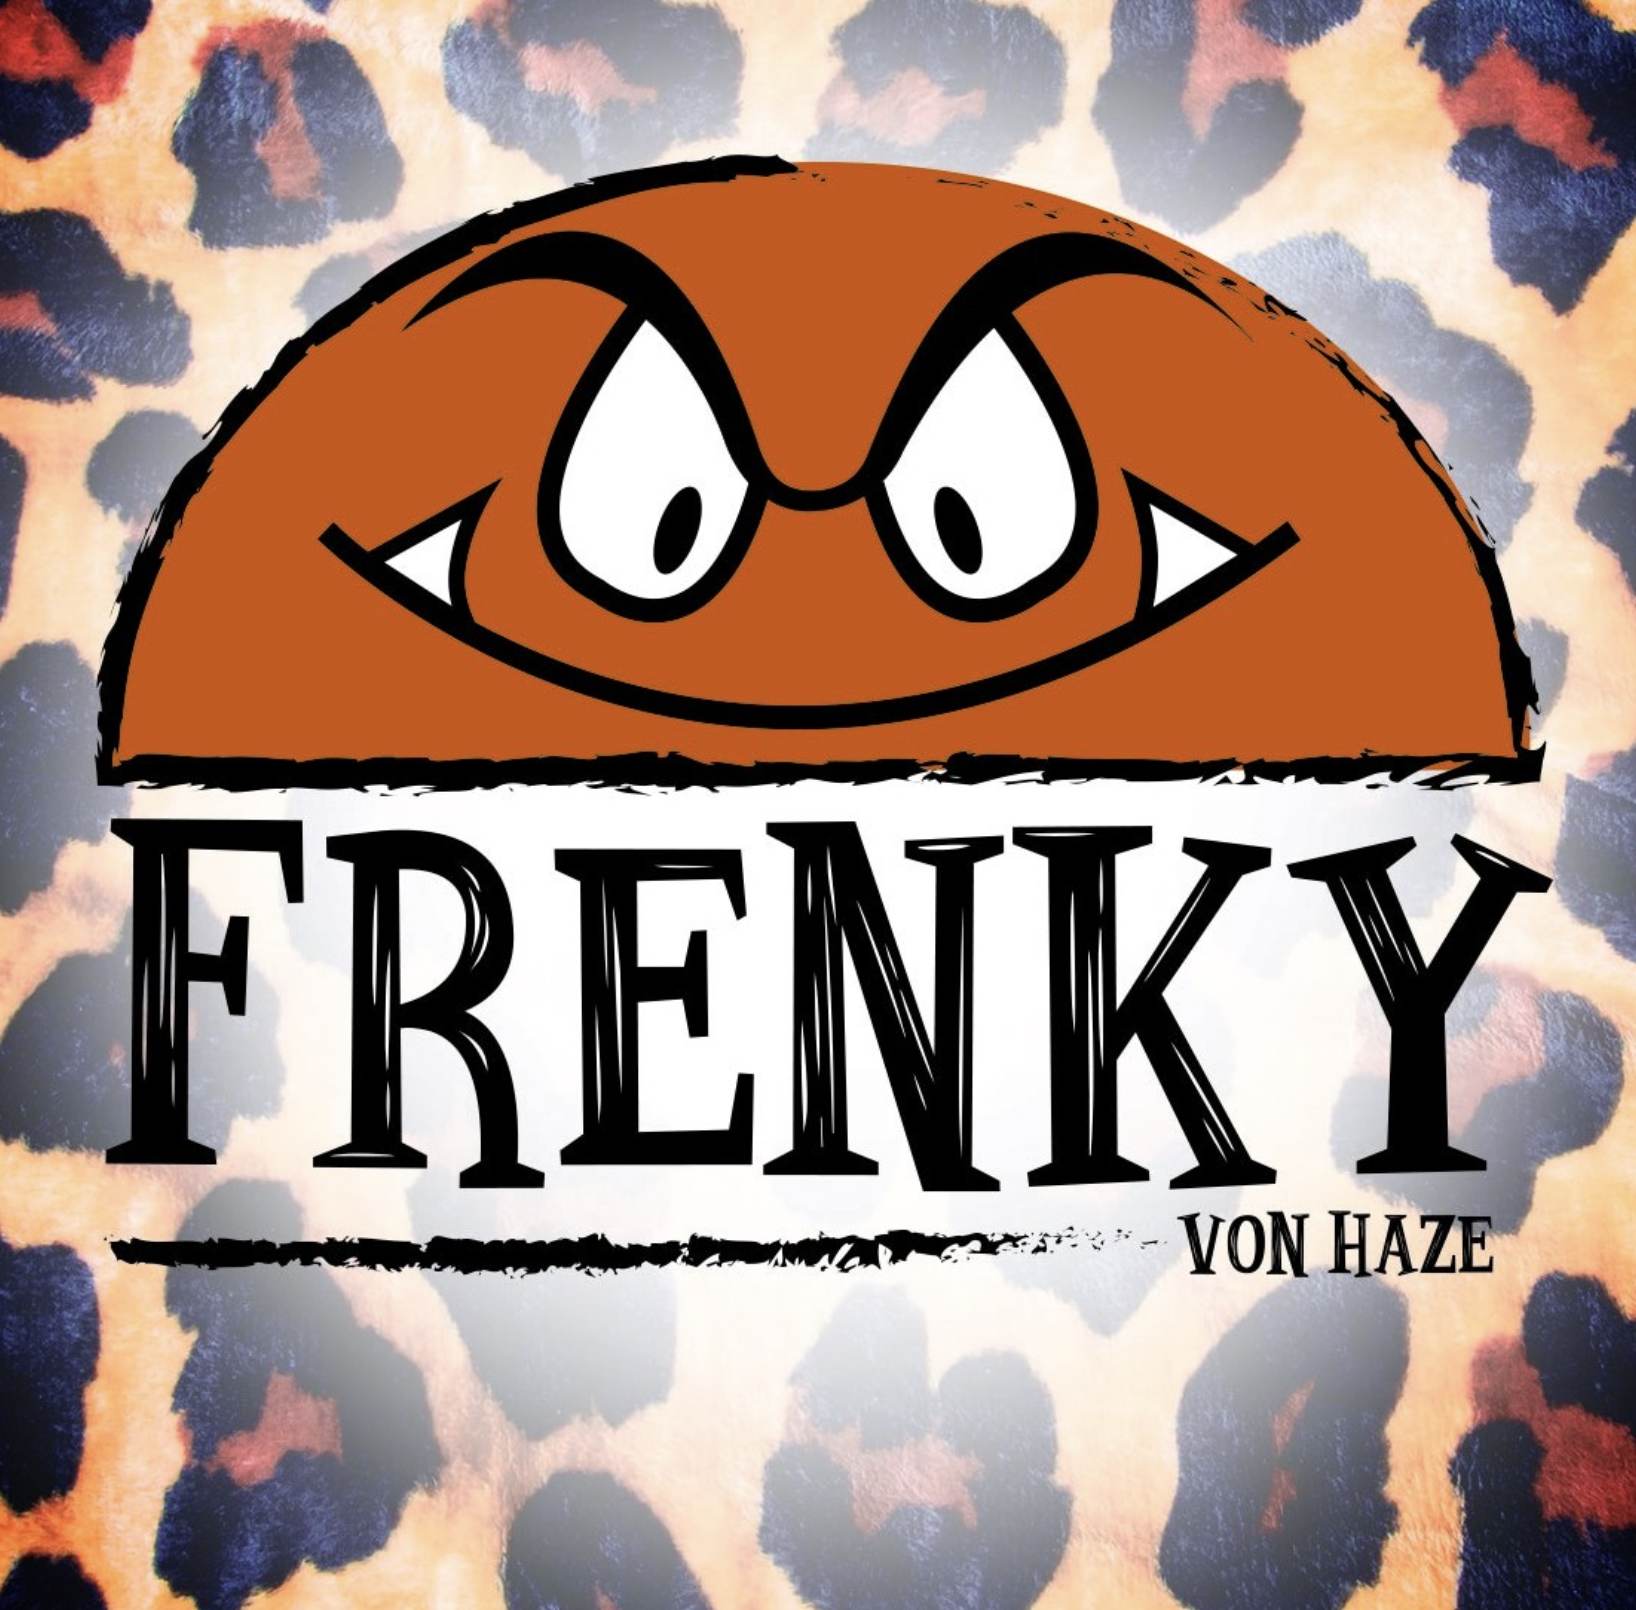 Frenky von Haze